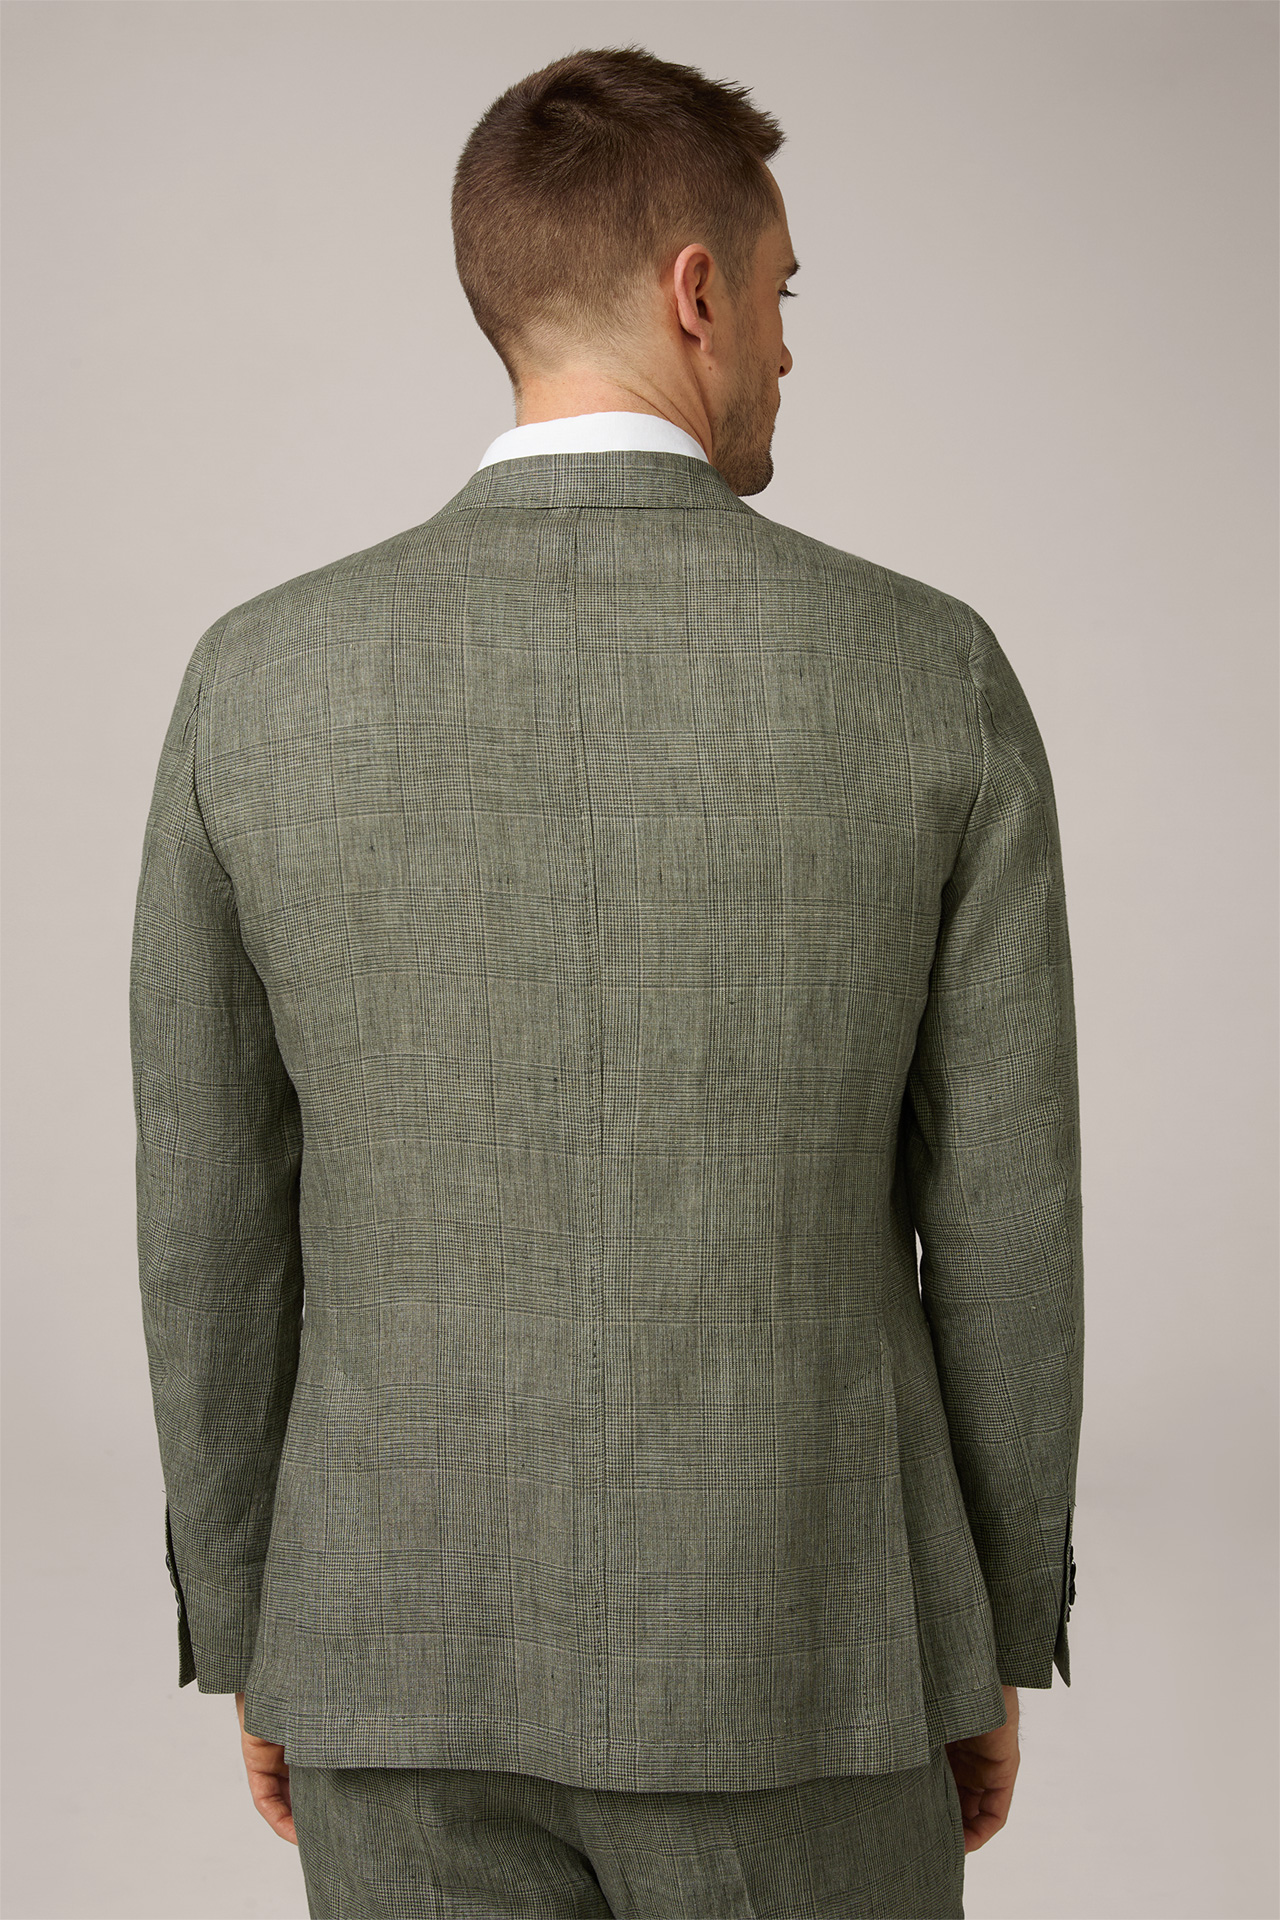 Giro Modular Linen Jacket in a Green Pattern